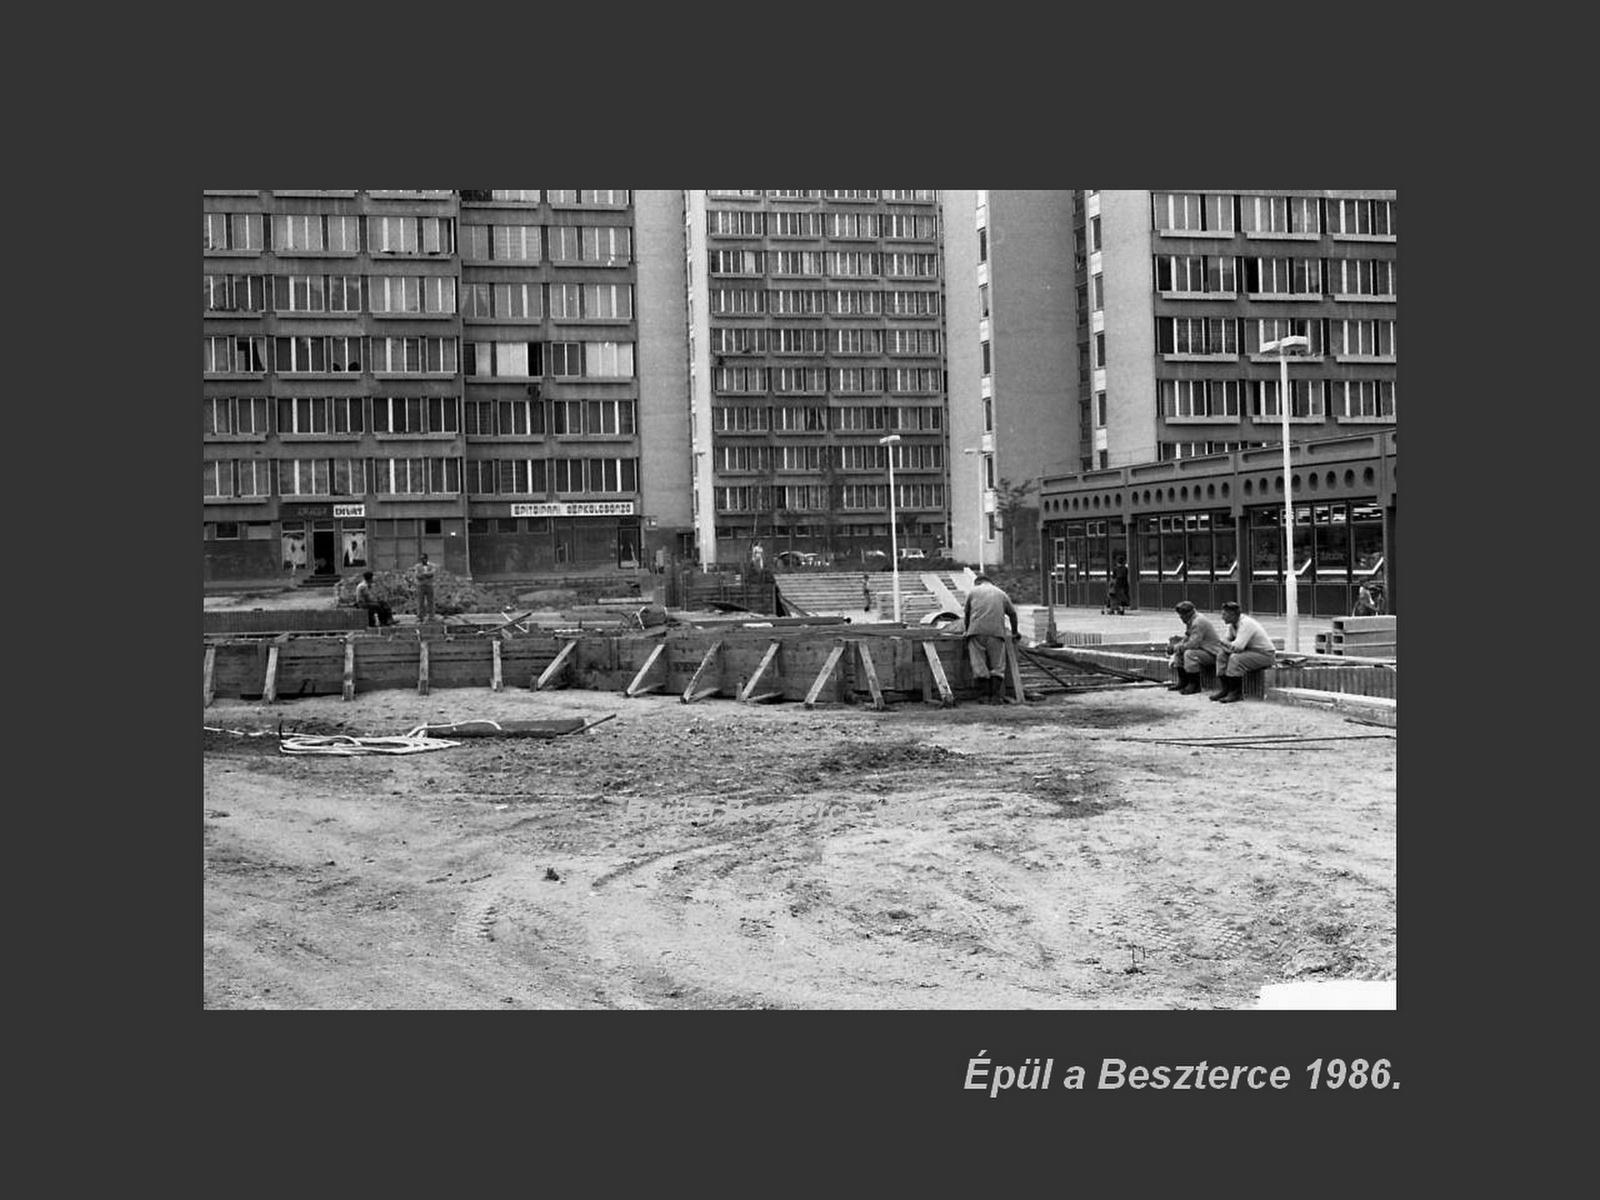 Besztercei képek, a tér épül 1986.